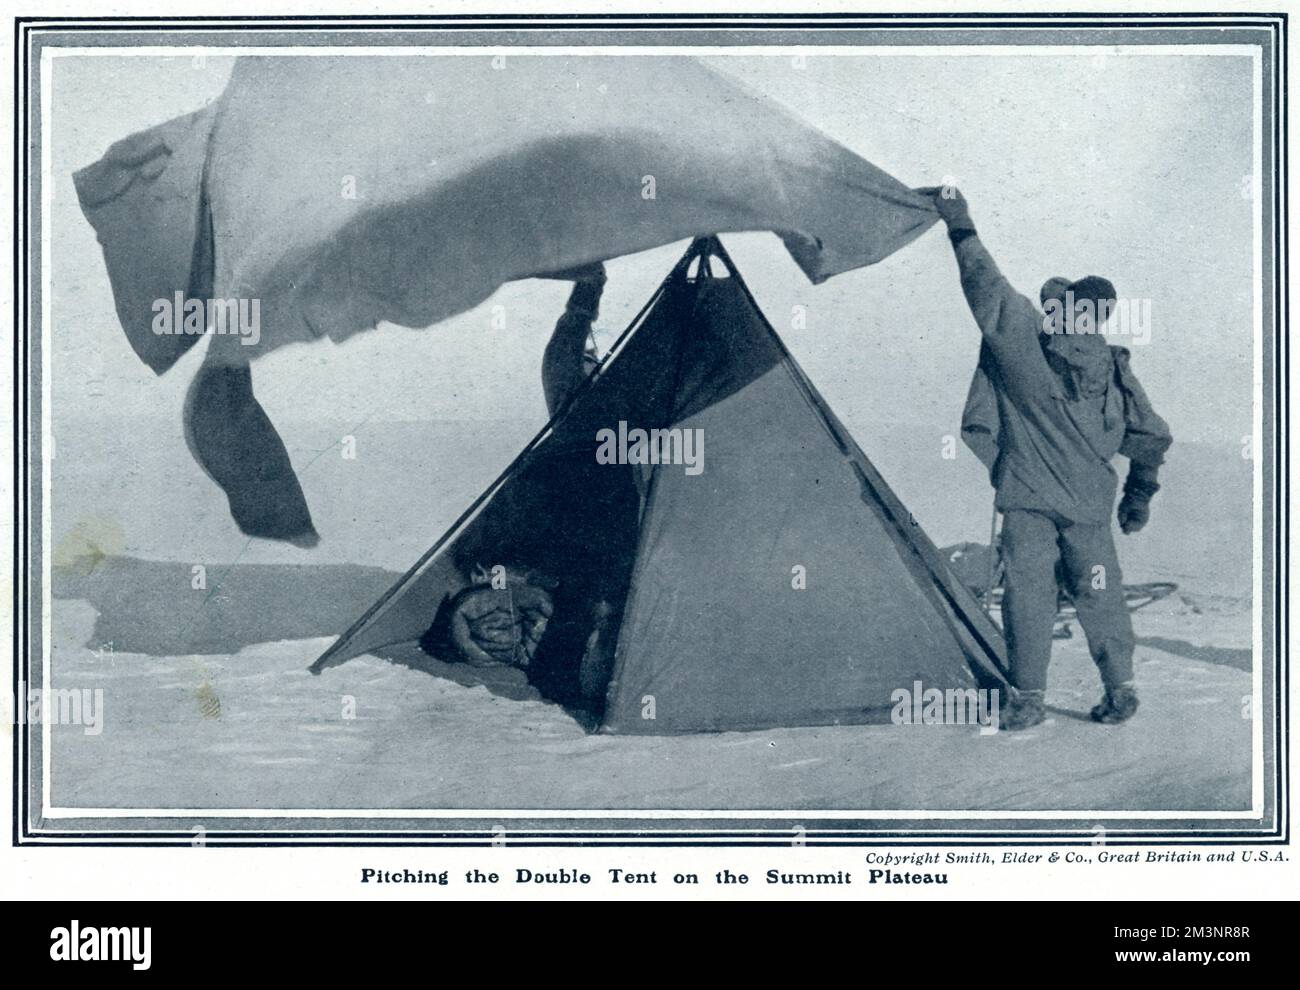 Das Doppelzelt, das Captain Scott auf seiner letzten Reise zum Südpol benutzte, 1910 - 1912, auf einem Foto von Lieutenant H. R. Bowers auf dem oberen Plateau. Datum: 1913 Stockfoto